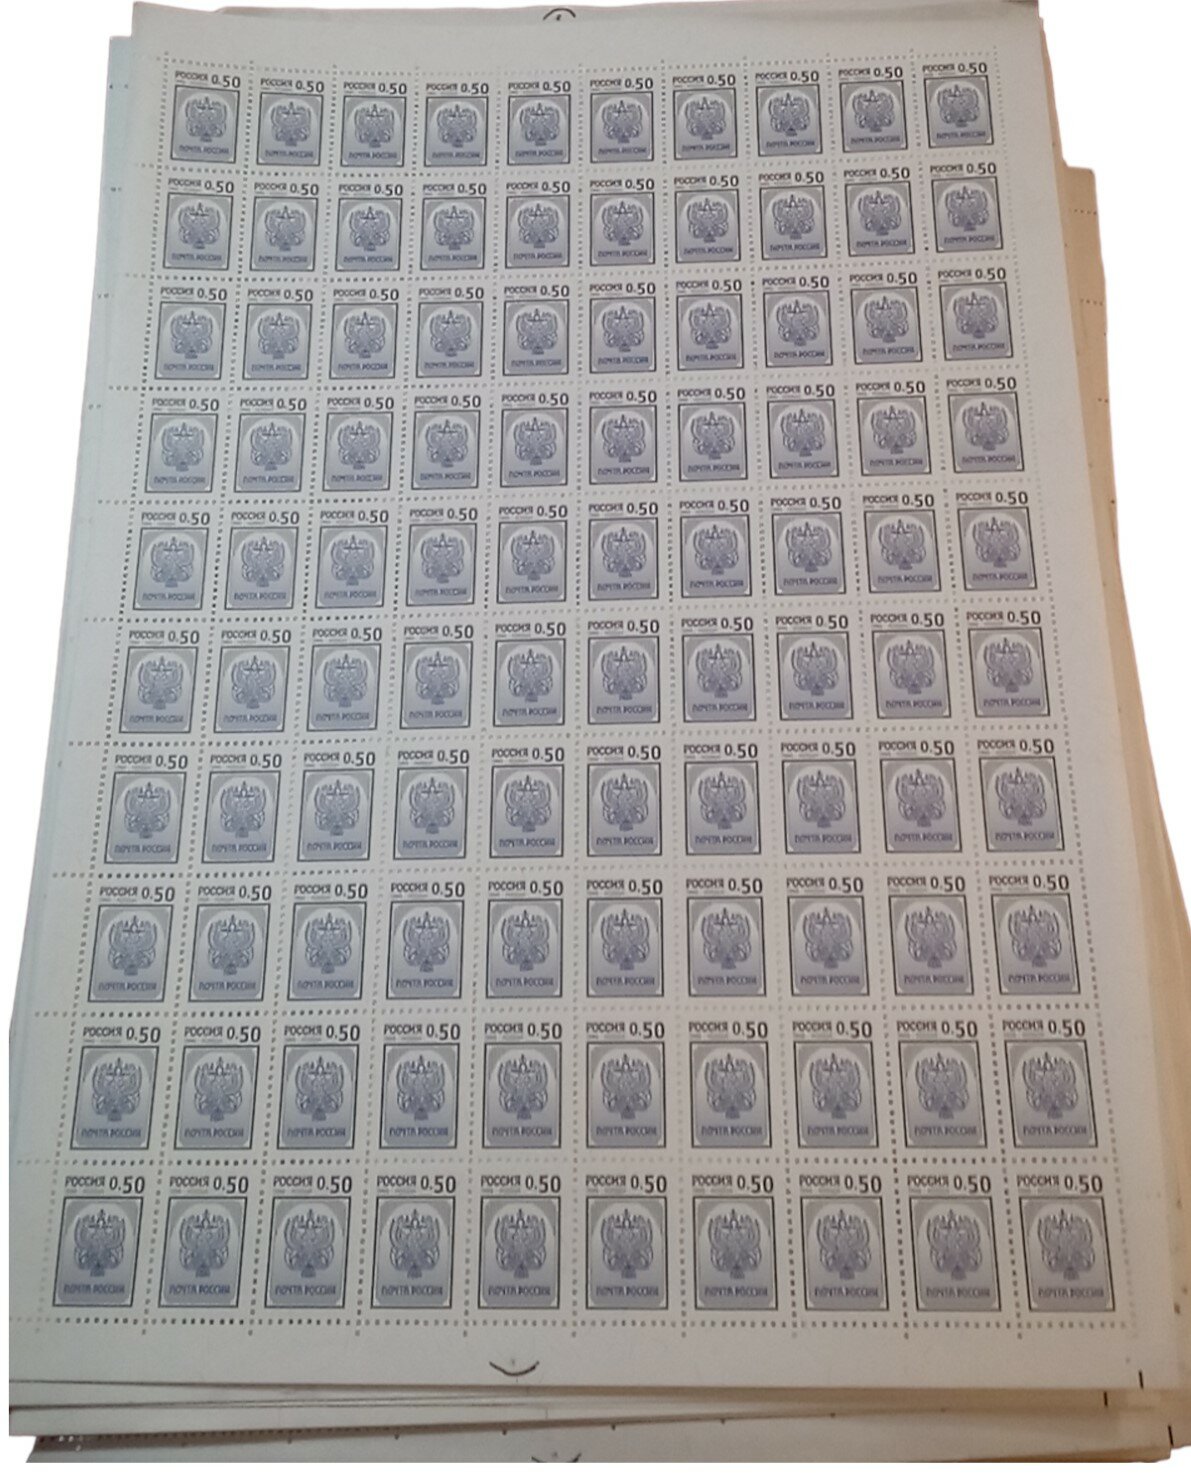 Марка почтовая 50 копеек, Россия, 1998 год "Герб", 1 лист (100 марок)